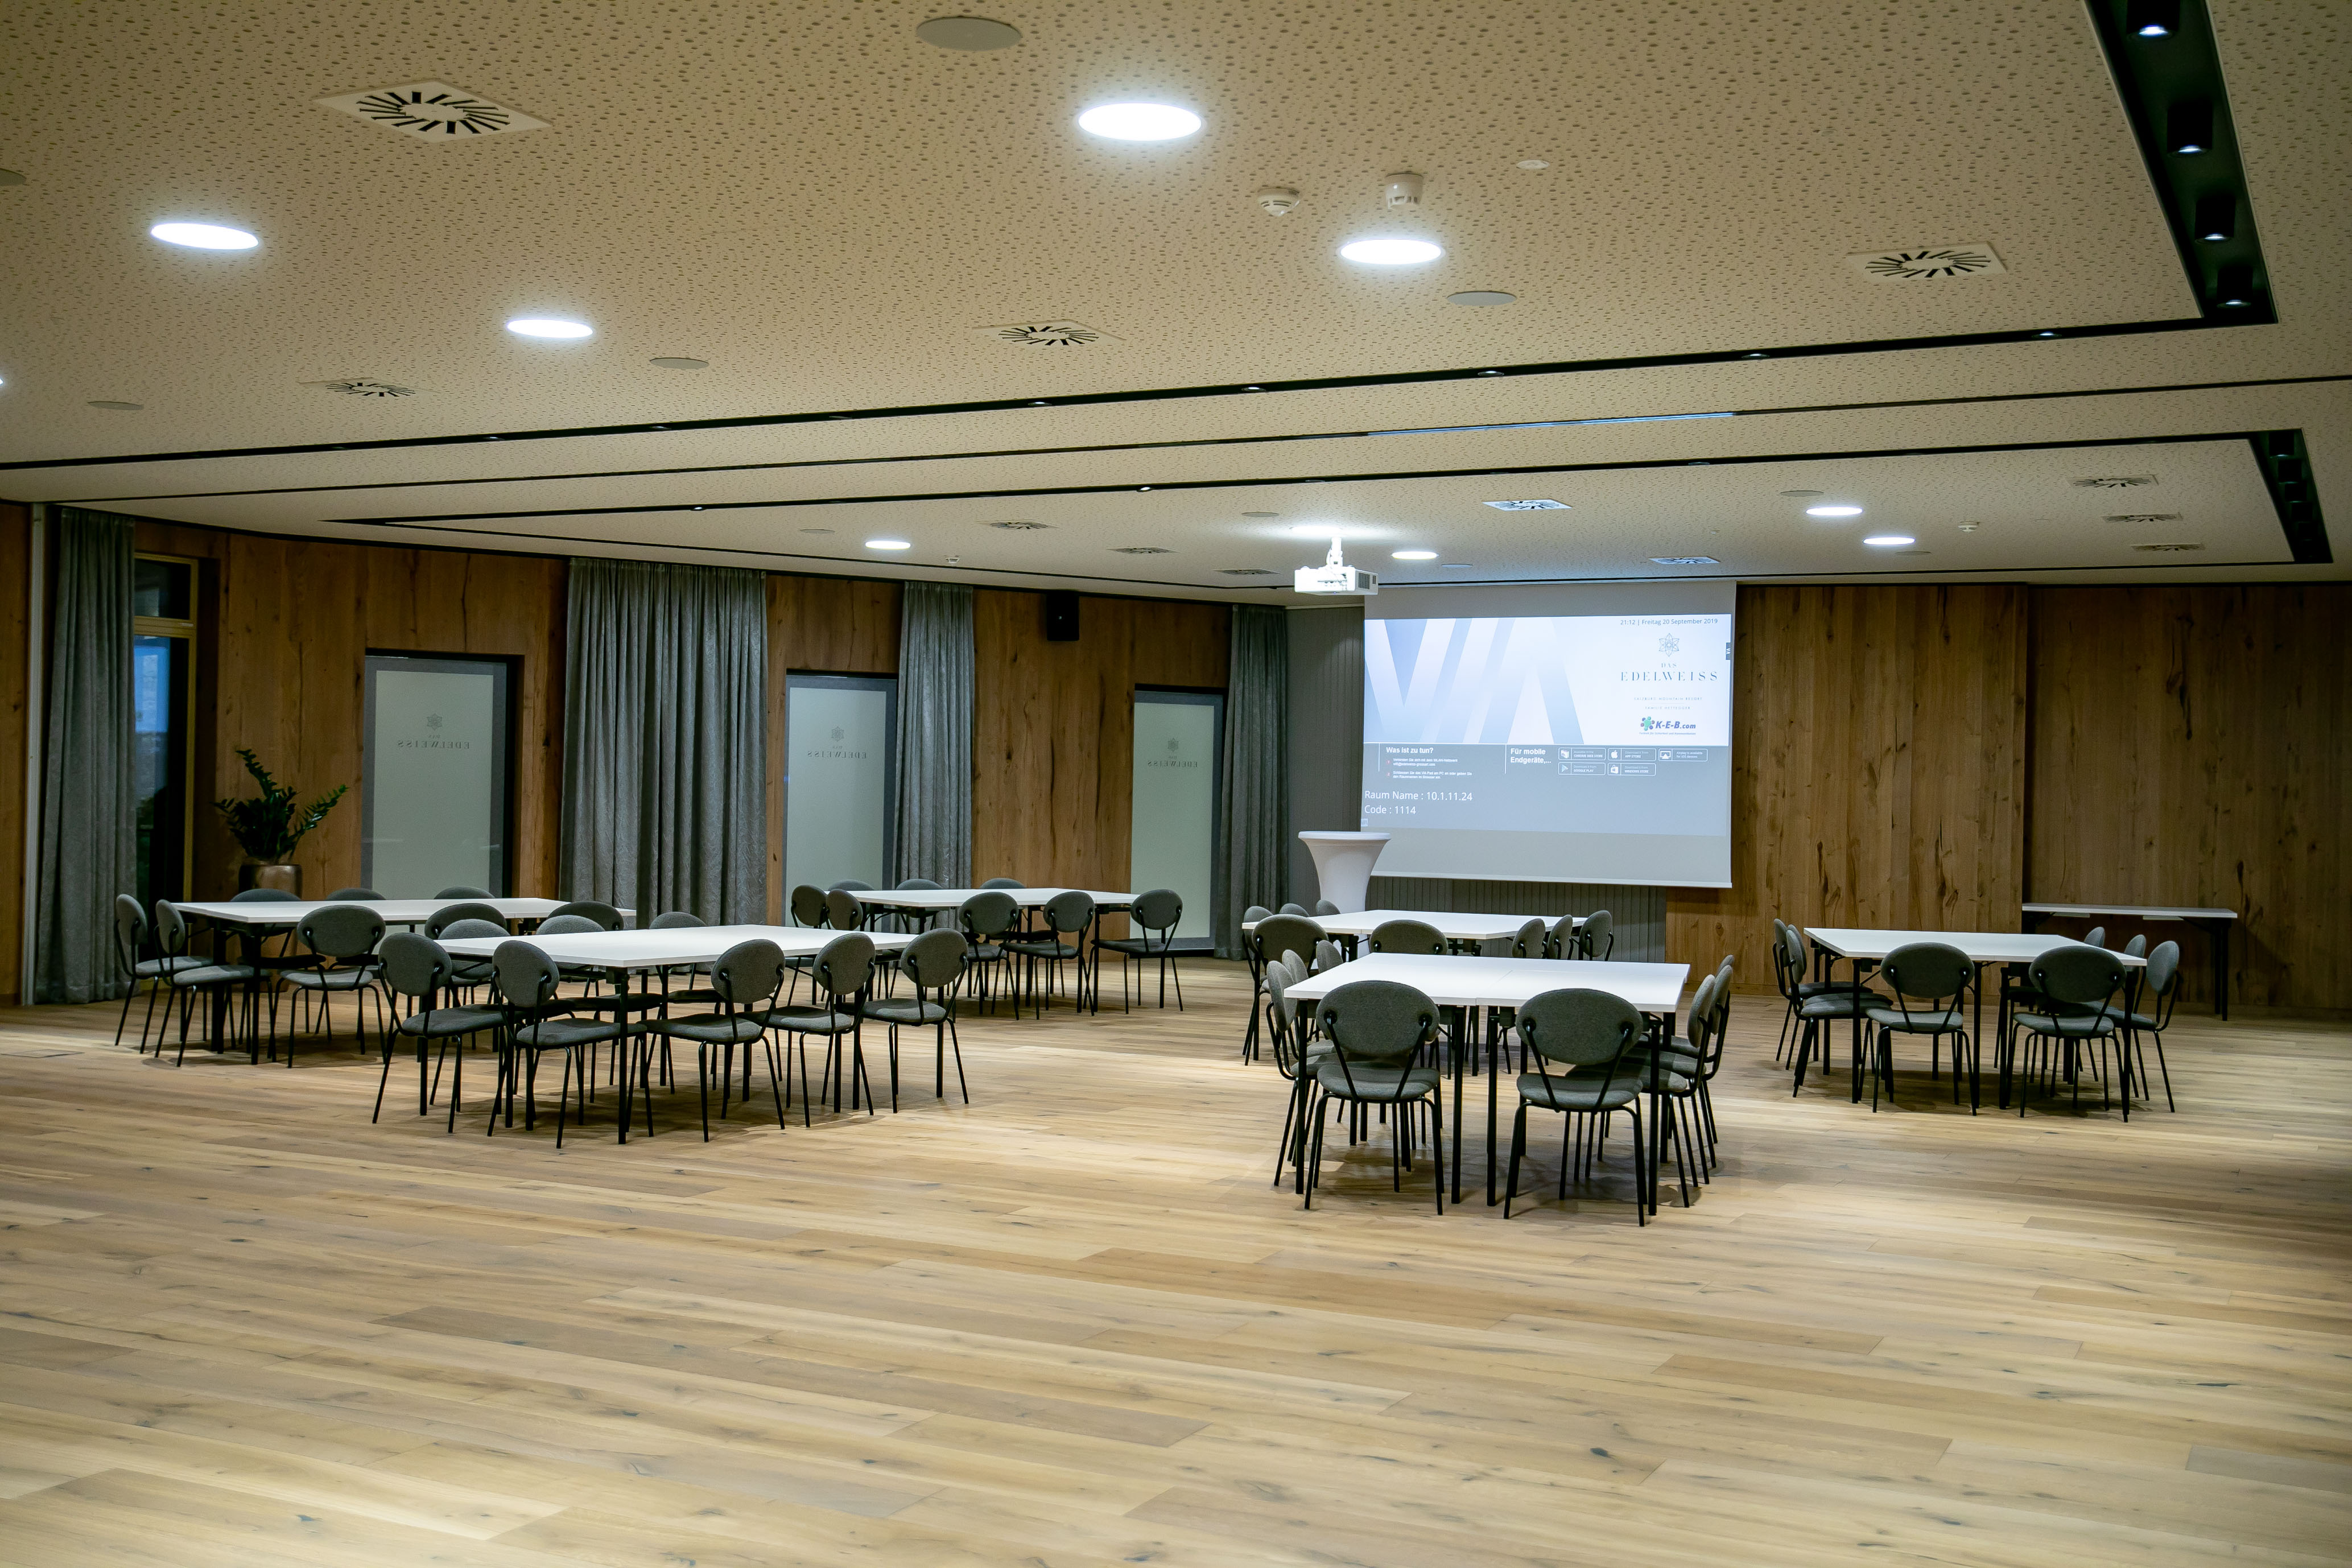 Konferenzsaal im Hotel Edelweiss, Eröffnung nach Umbau, Großarl, Salzburg, 20190920, ©www.wildbild.at